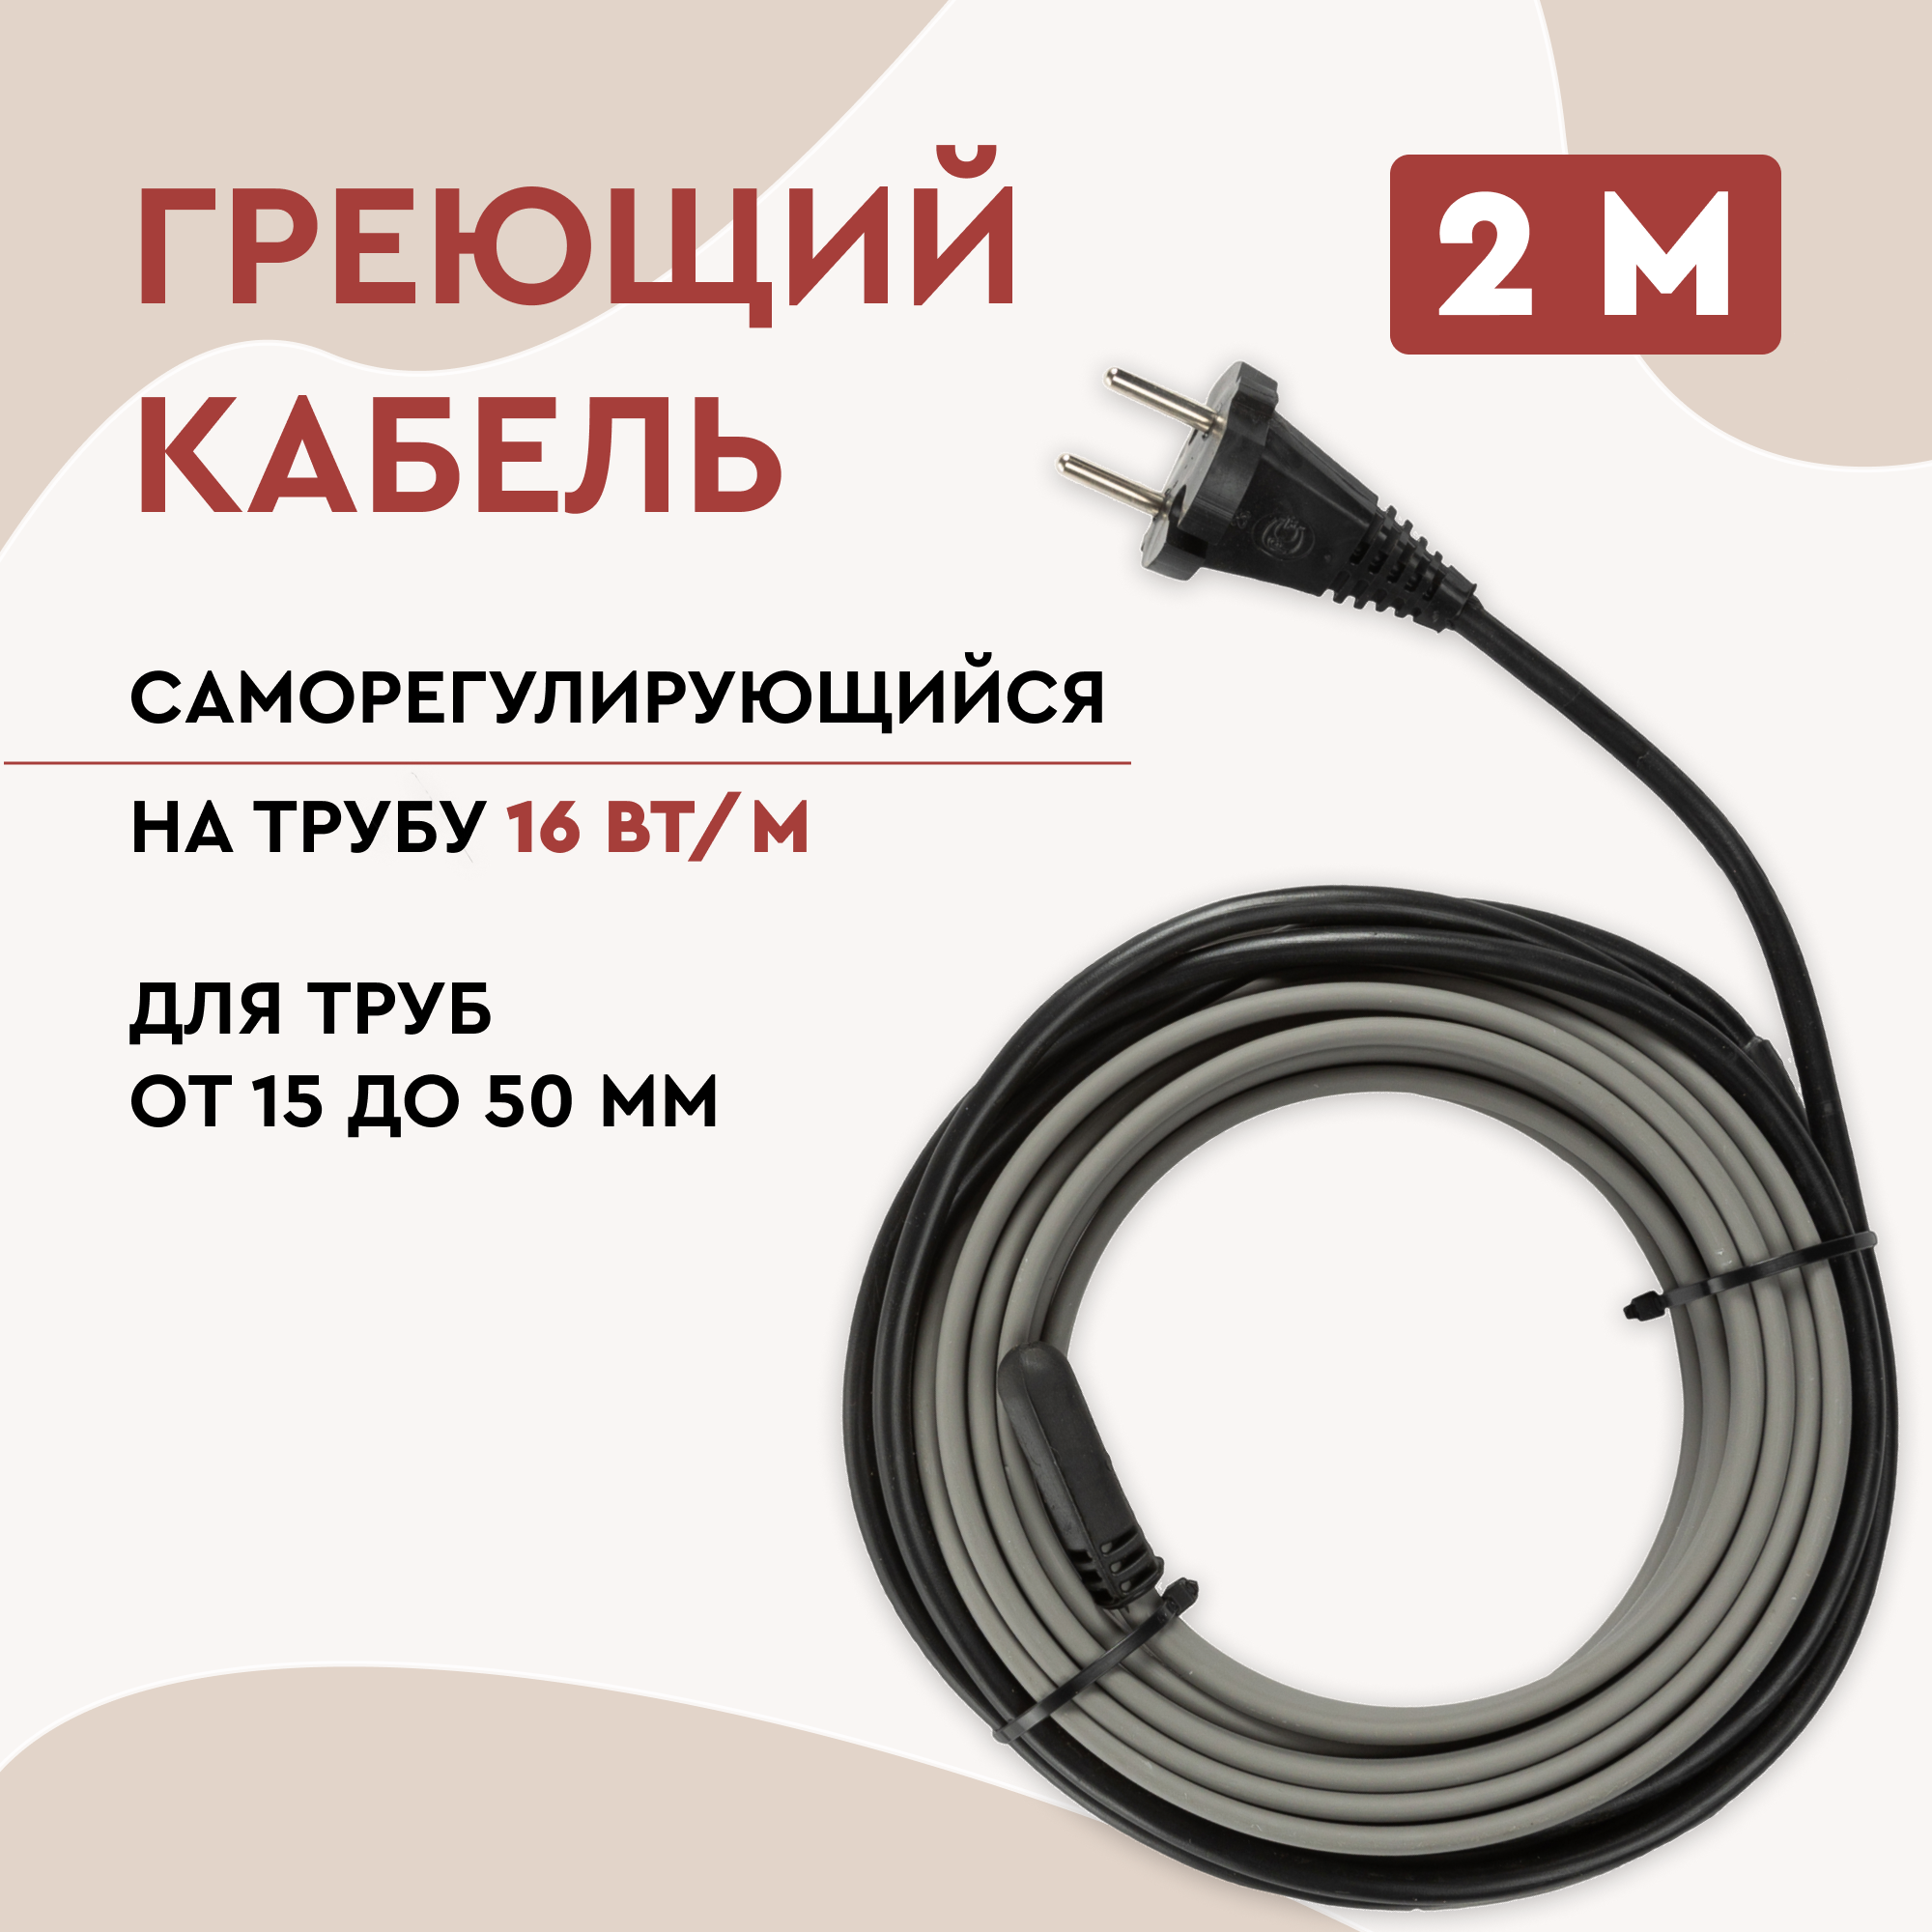 Греющий кабель Lite на трубу 2м 32Вт